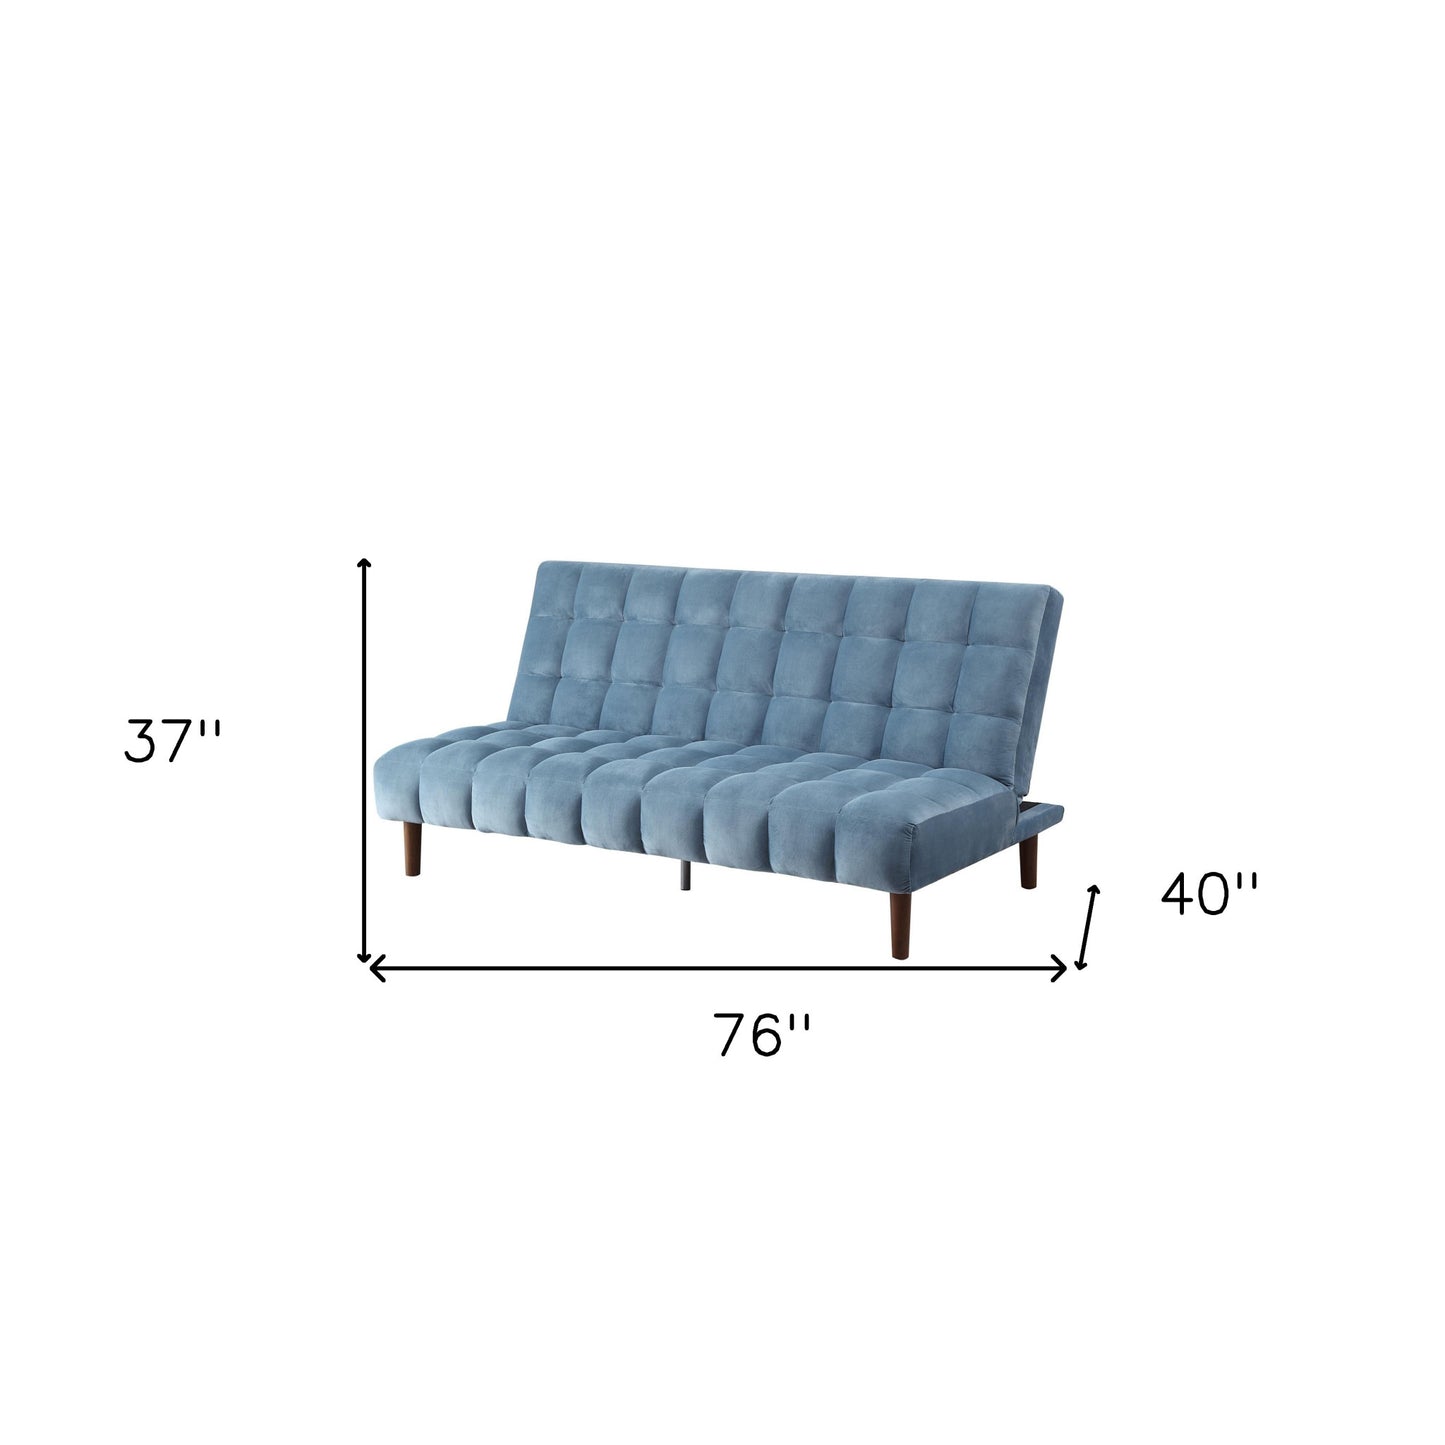 76" Teal Blue Velvet Sleeper Sofa With Wood Brown Legs